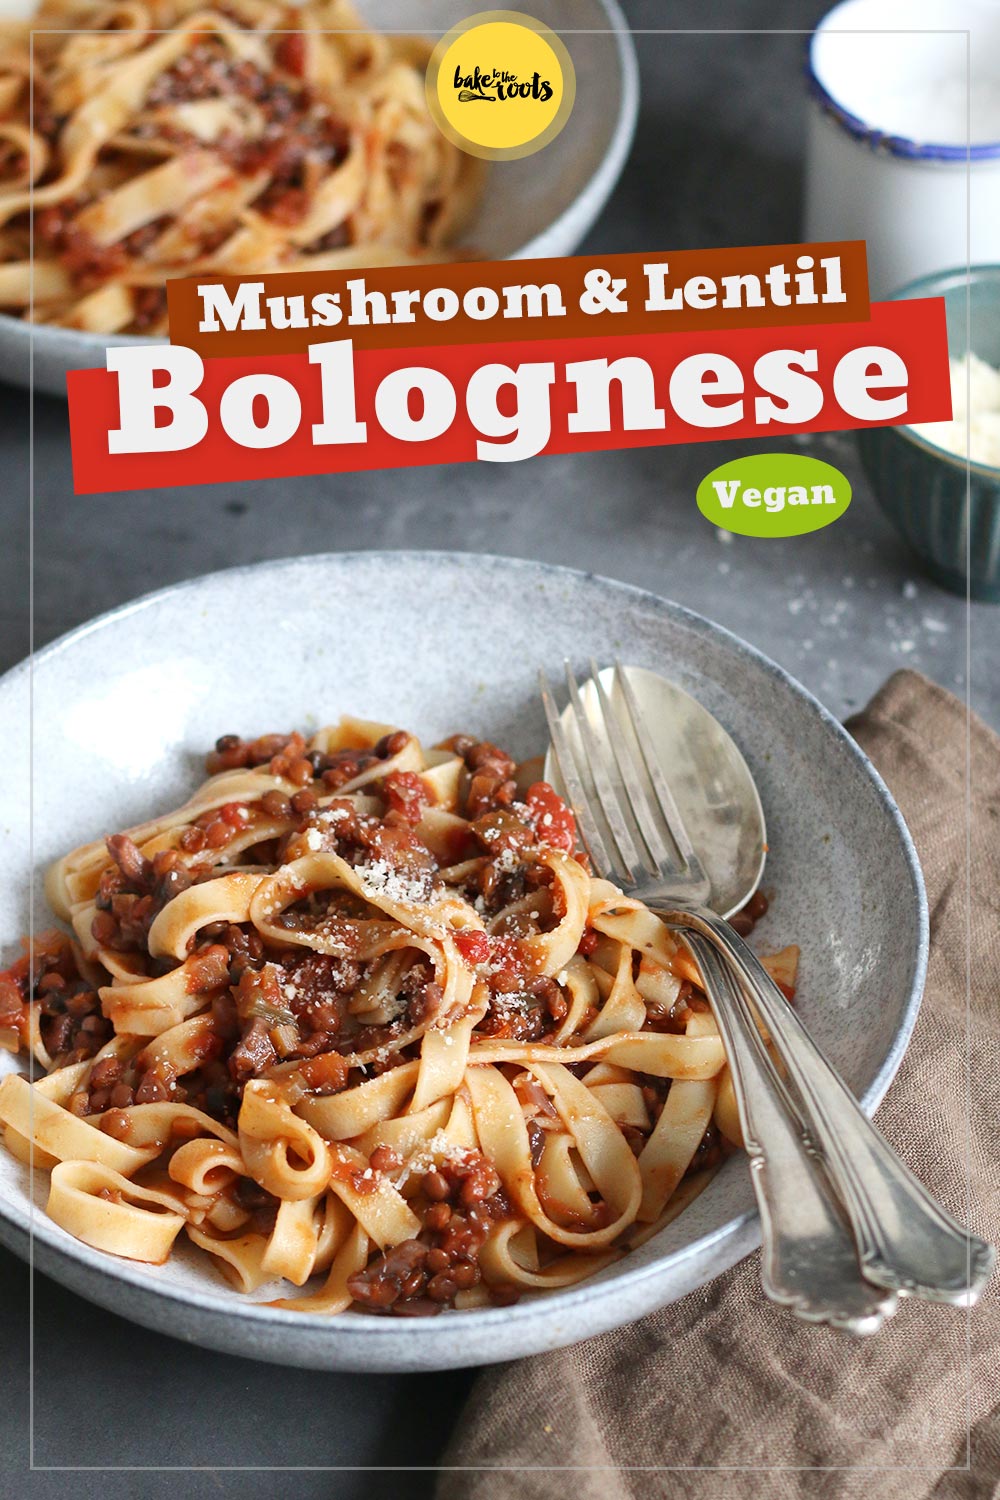 Vegan Mushroom & Lentil Bolognese | Bake to the roots